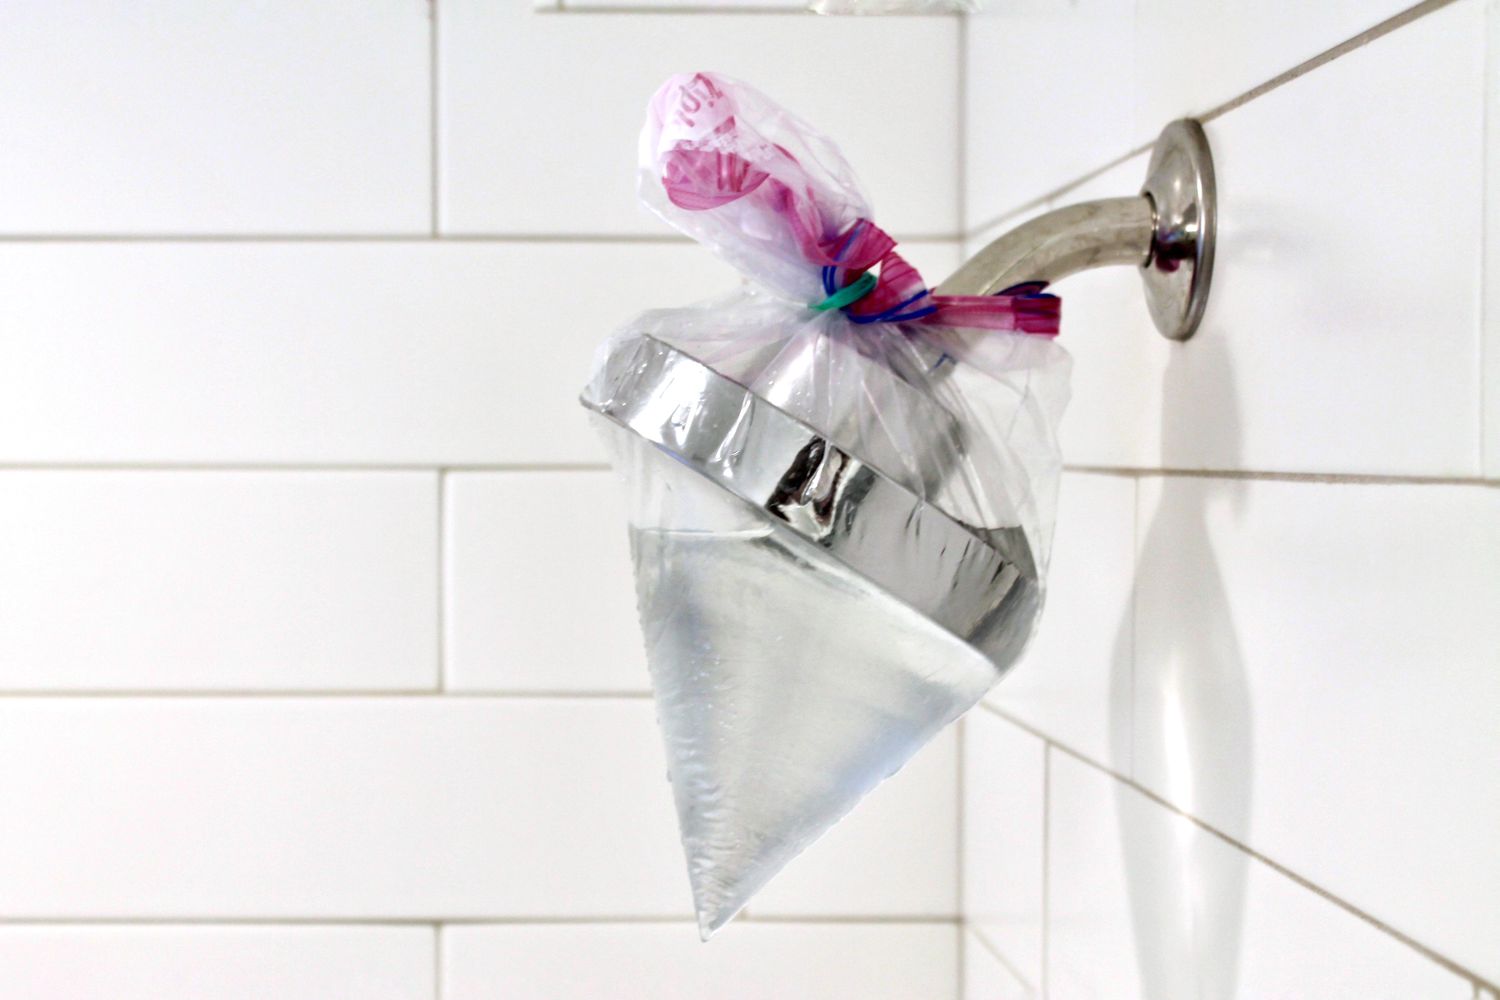 bolsa de plástico llena de vinagre atada alrededor de una alcachofa de ducha